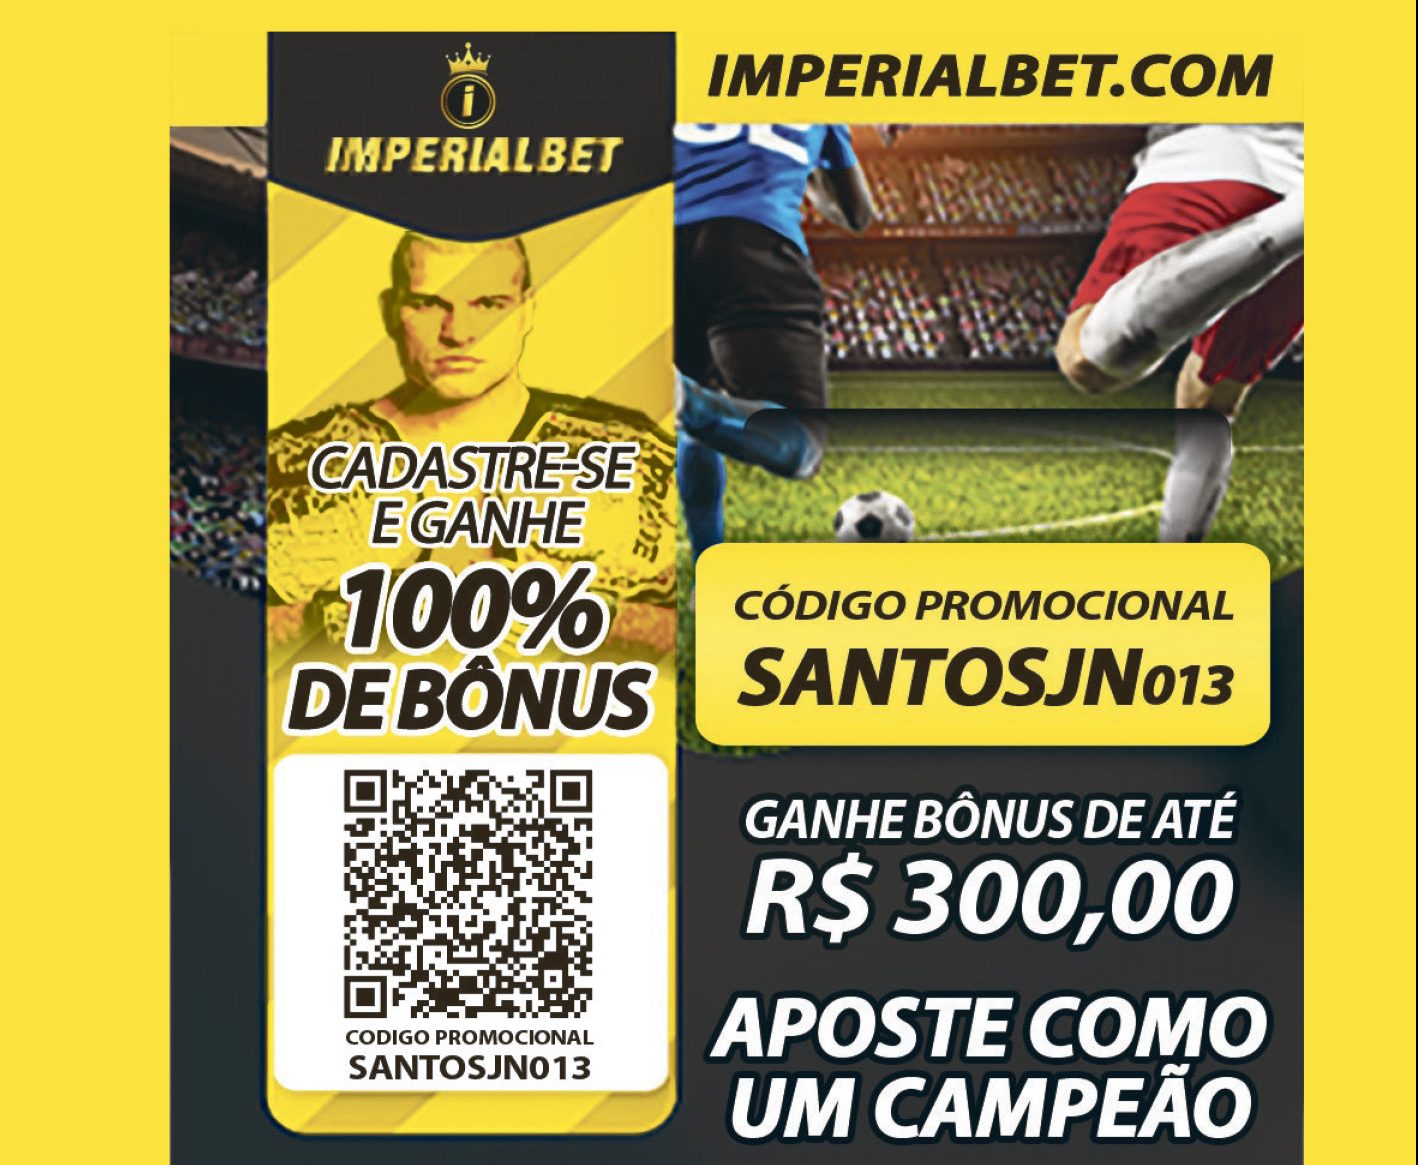 Ganhe até 300 reais de bônus e seja um campeão no mais completo site de apostas | Jornal da Orla